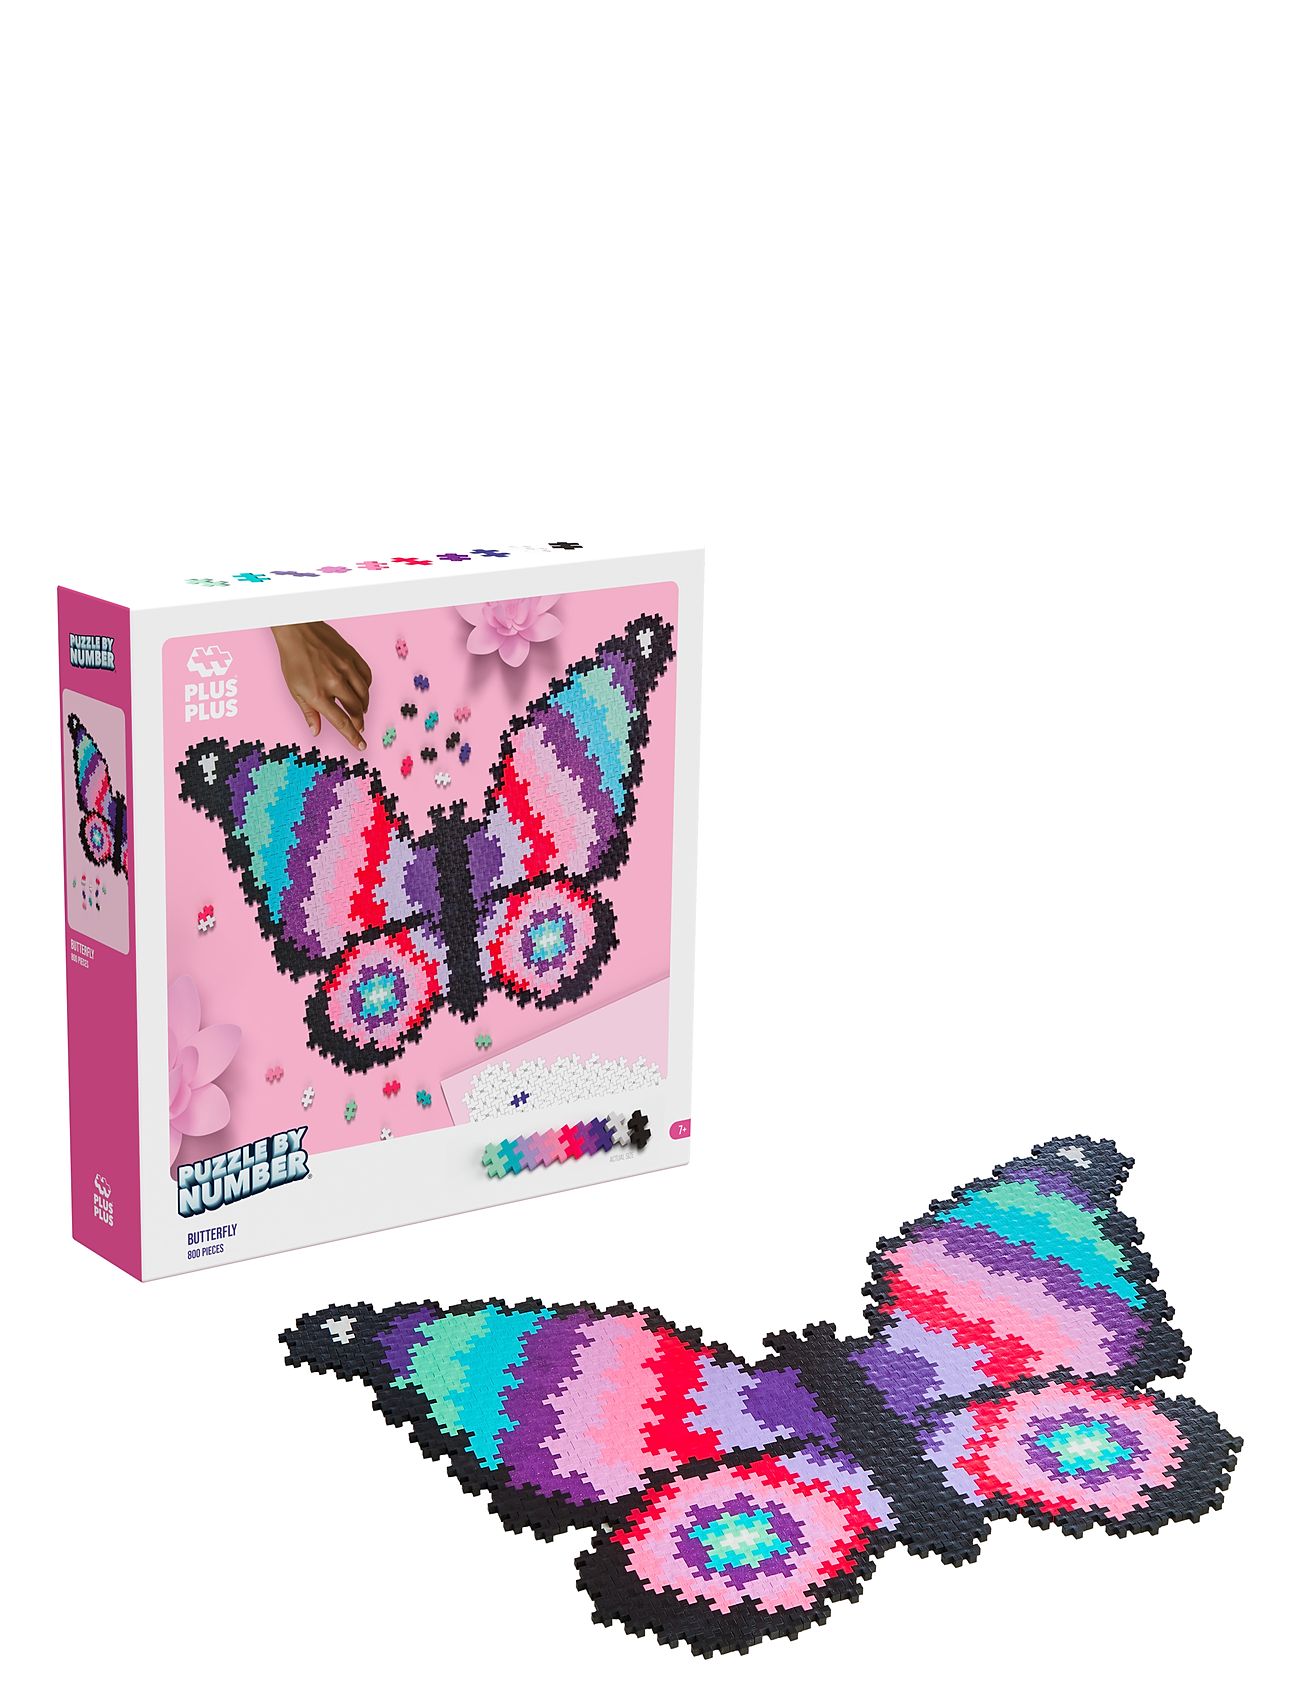 Plus-Plus Puzzle By Number Butterfly 800Pcs Toys Building Sets & Blocks Building Sets Multi/patterned Plus-Plus